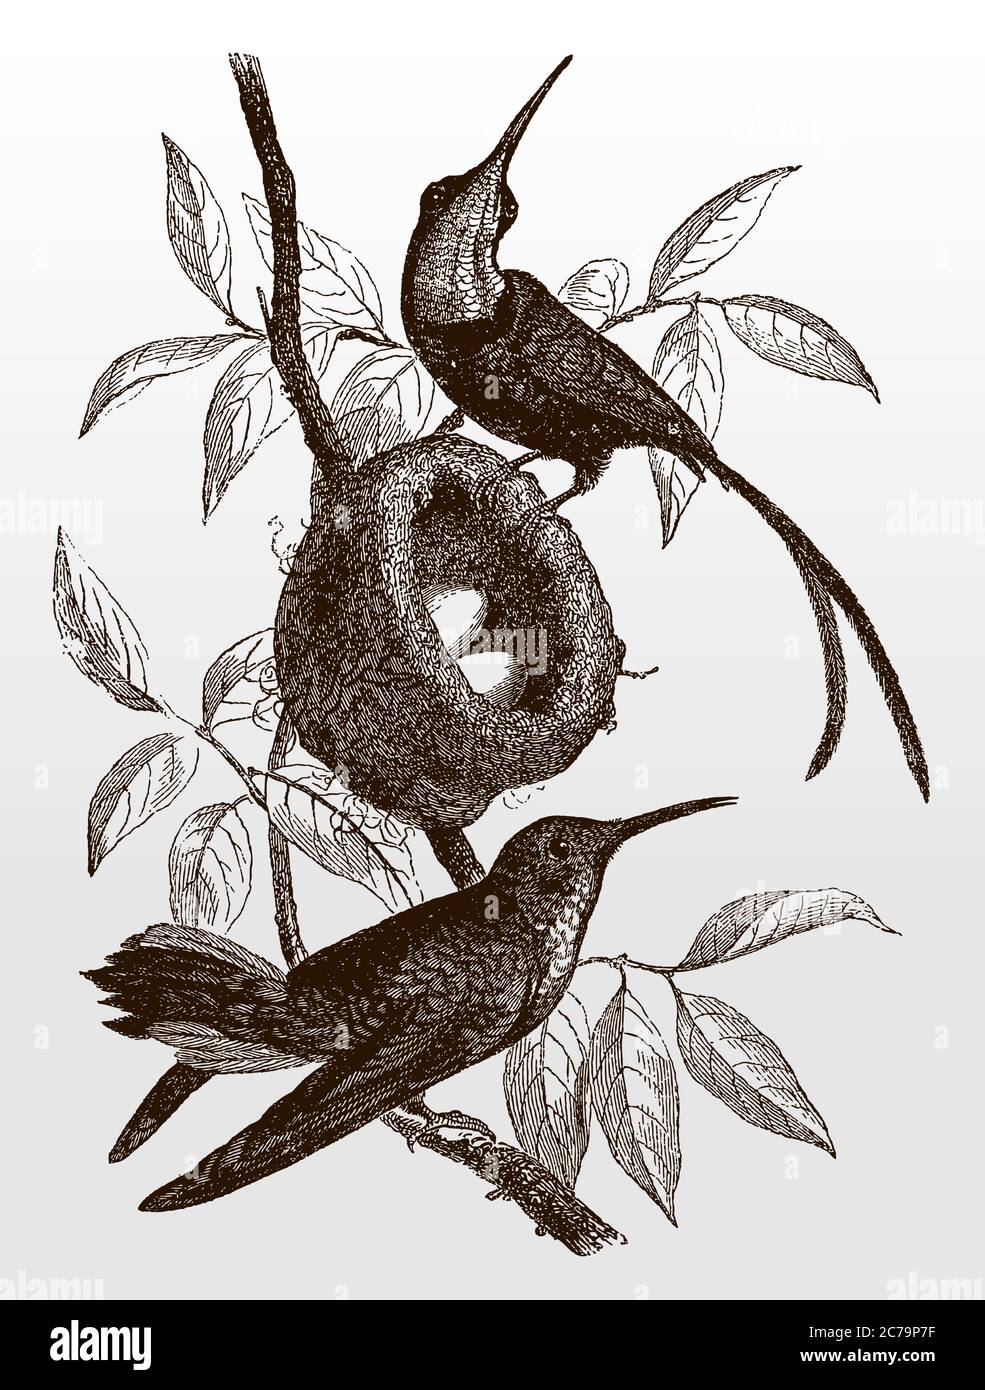 Zwei Kolibris der Art Purpurtopas, Topaza pella, auf einem Zweig in der Nähe eines Nestes mit zwei Eiern sitzend, nach einer antiken Illustration aus dem 19 Stock Vektor